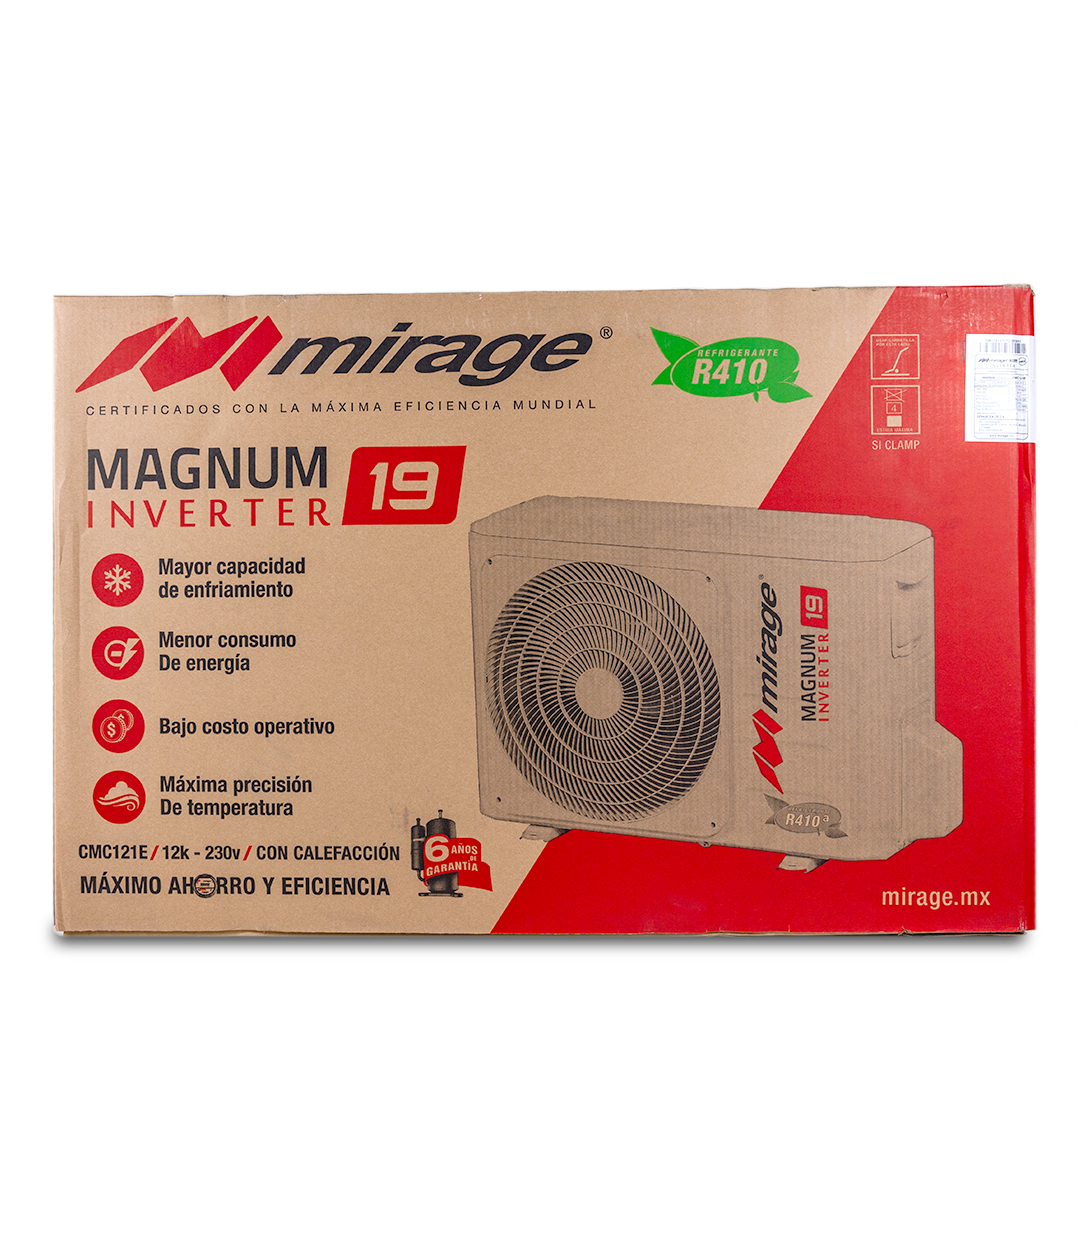 Magnum Inverter 19 EMC121E